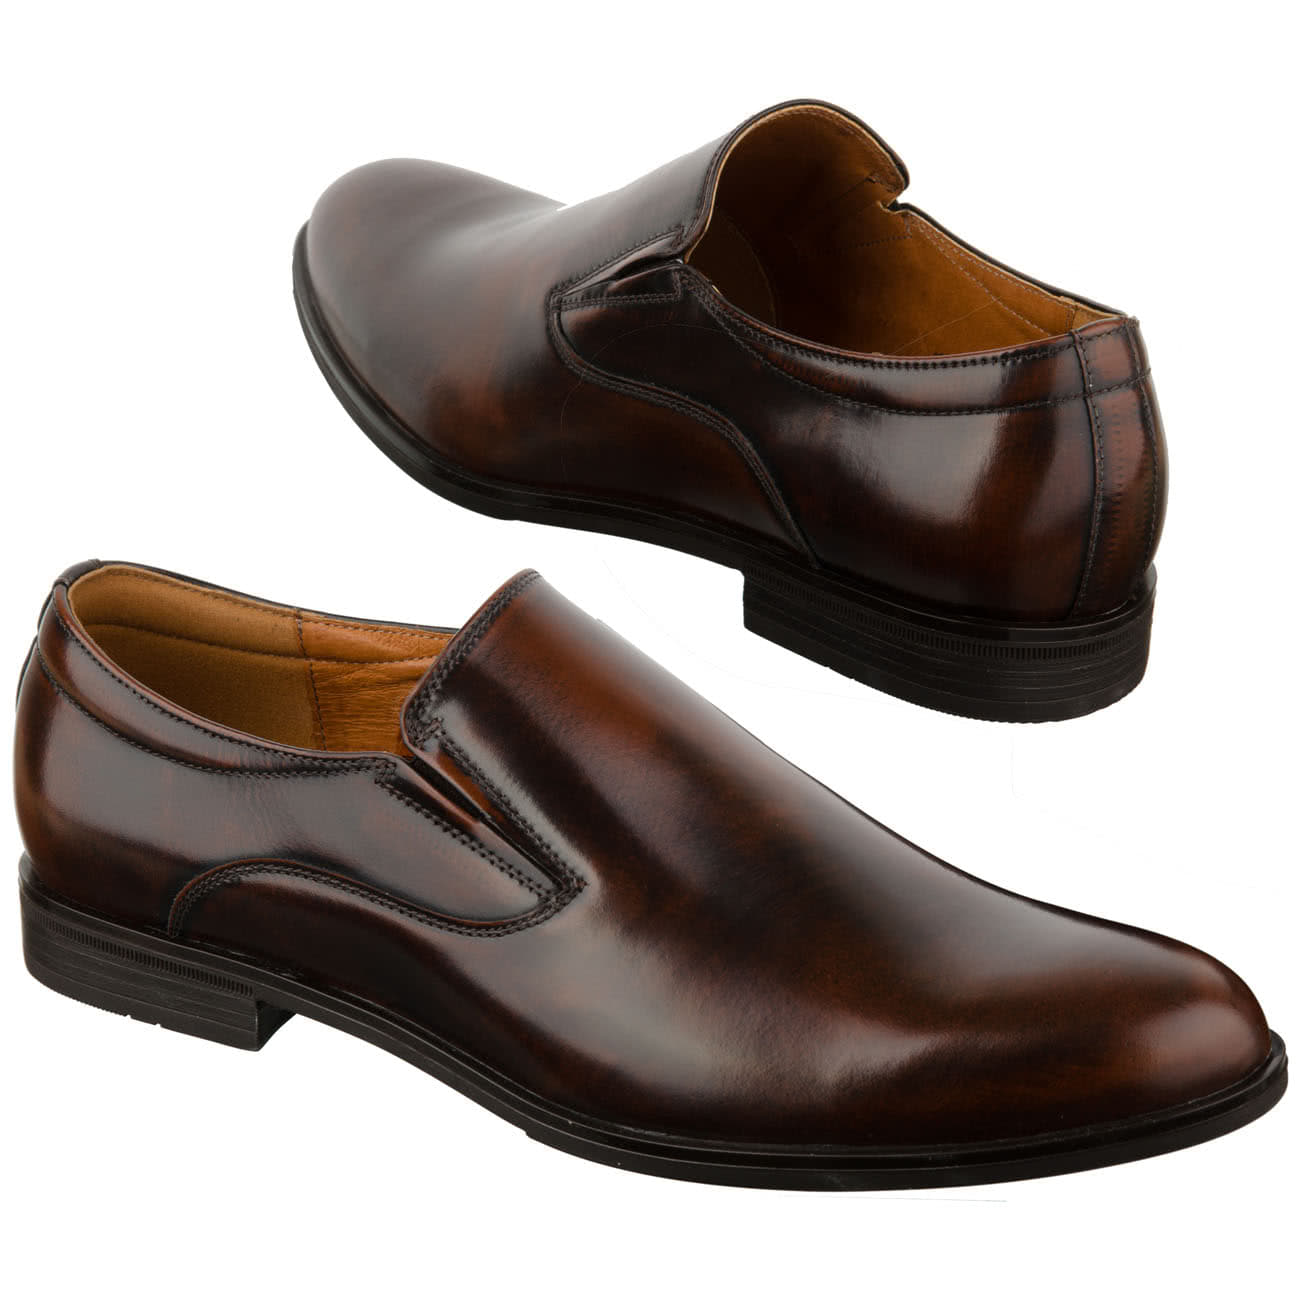 Туфли на резинке. Летние мужские туфли из натуральной кожи Conhpol с-6878-0727-00s02 Braz. Туфли мужские классические коричневые. Весенние туфли мужские коричневые. Офицерские туфли.